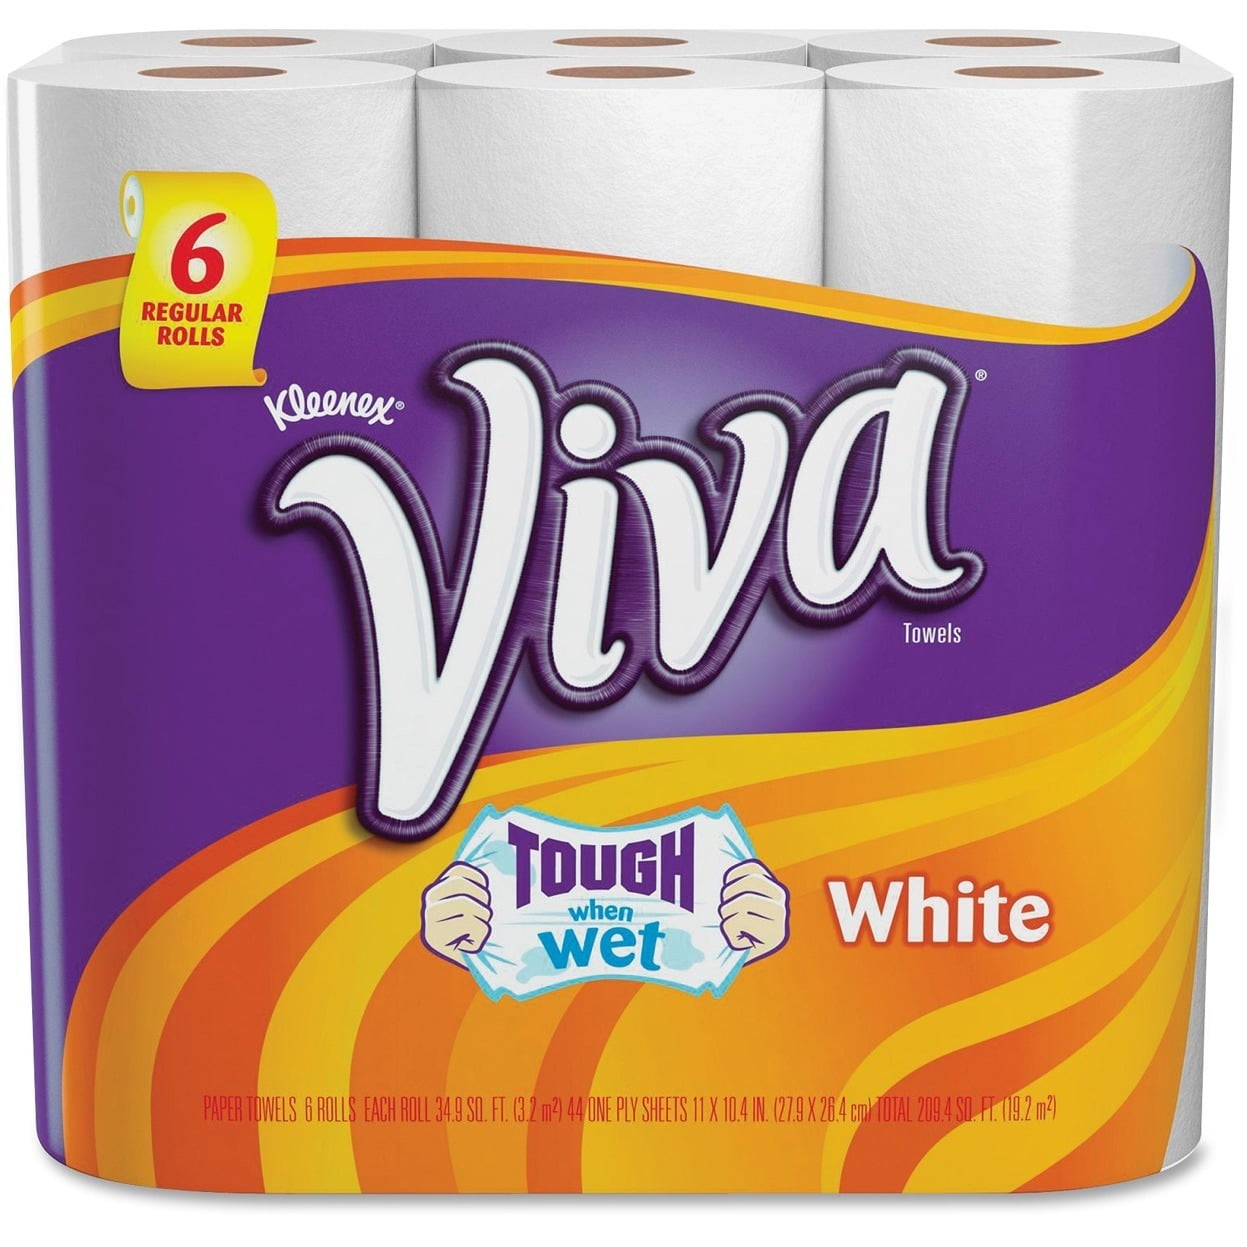 a viva paper towel